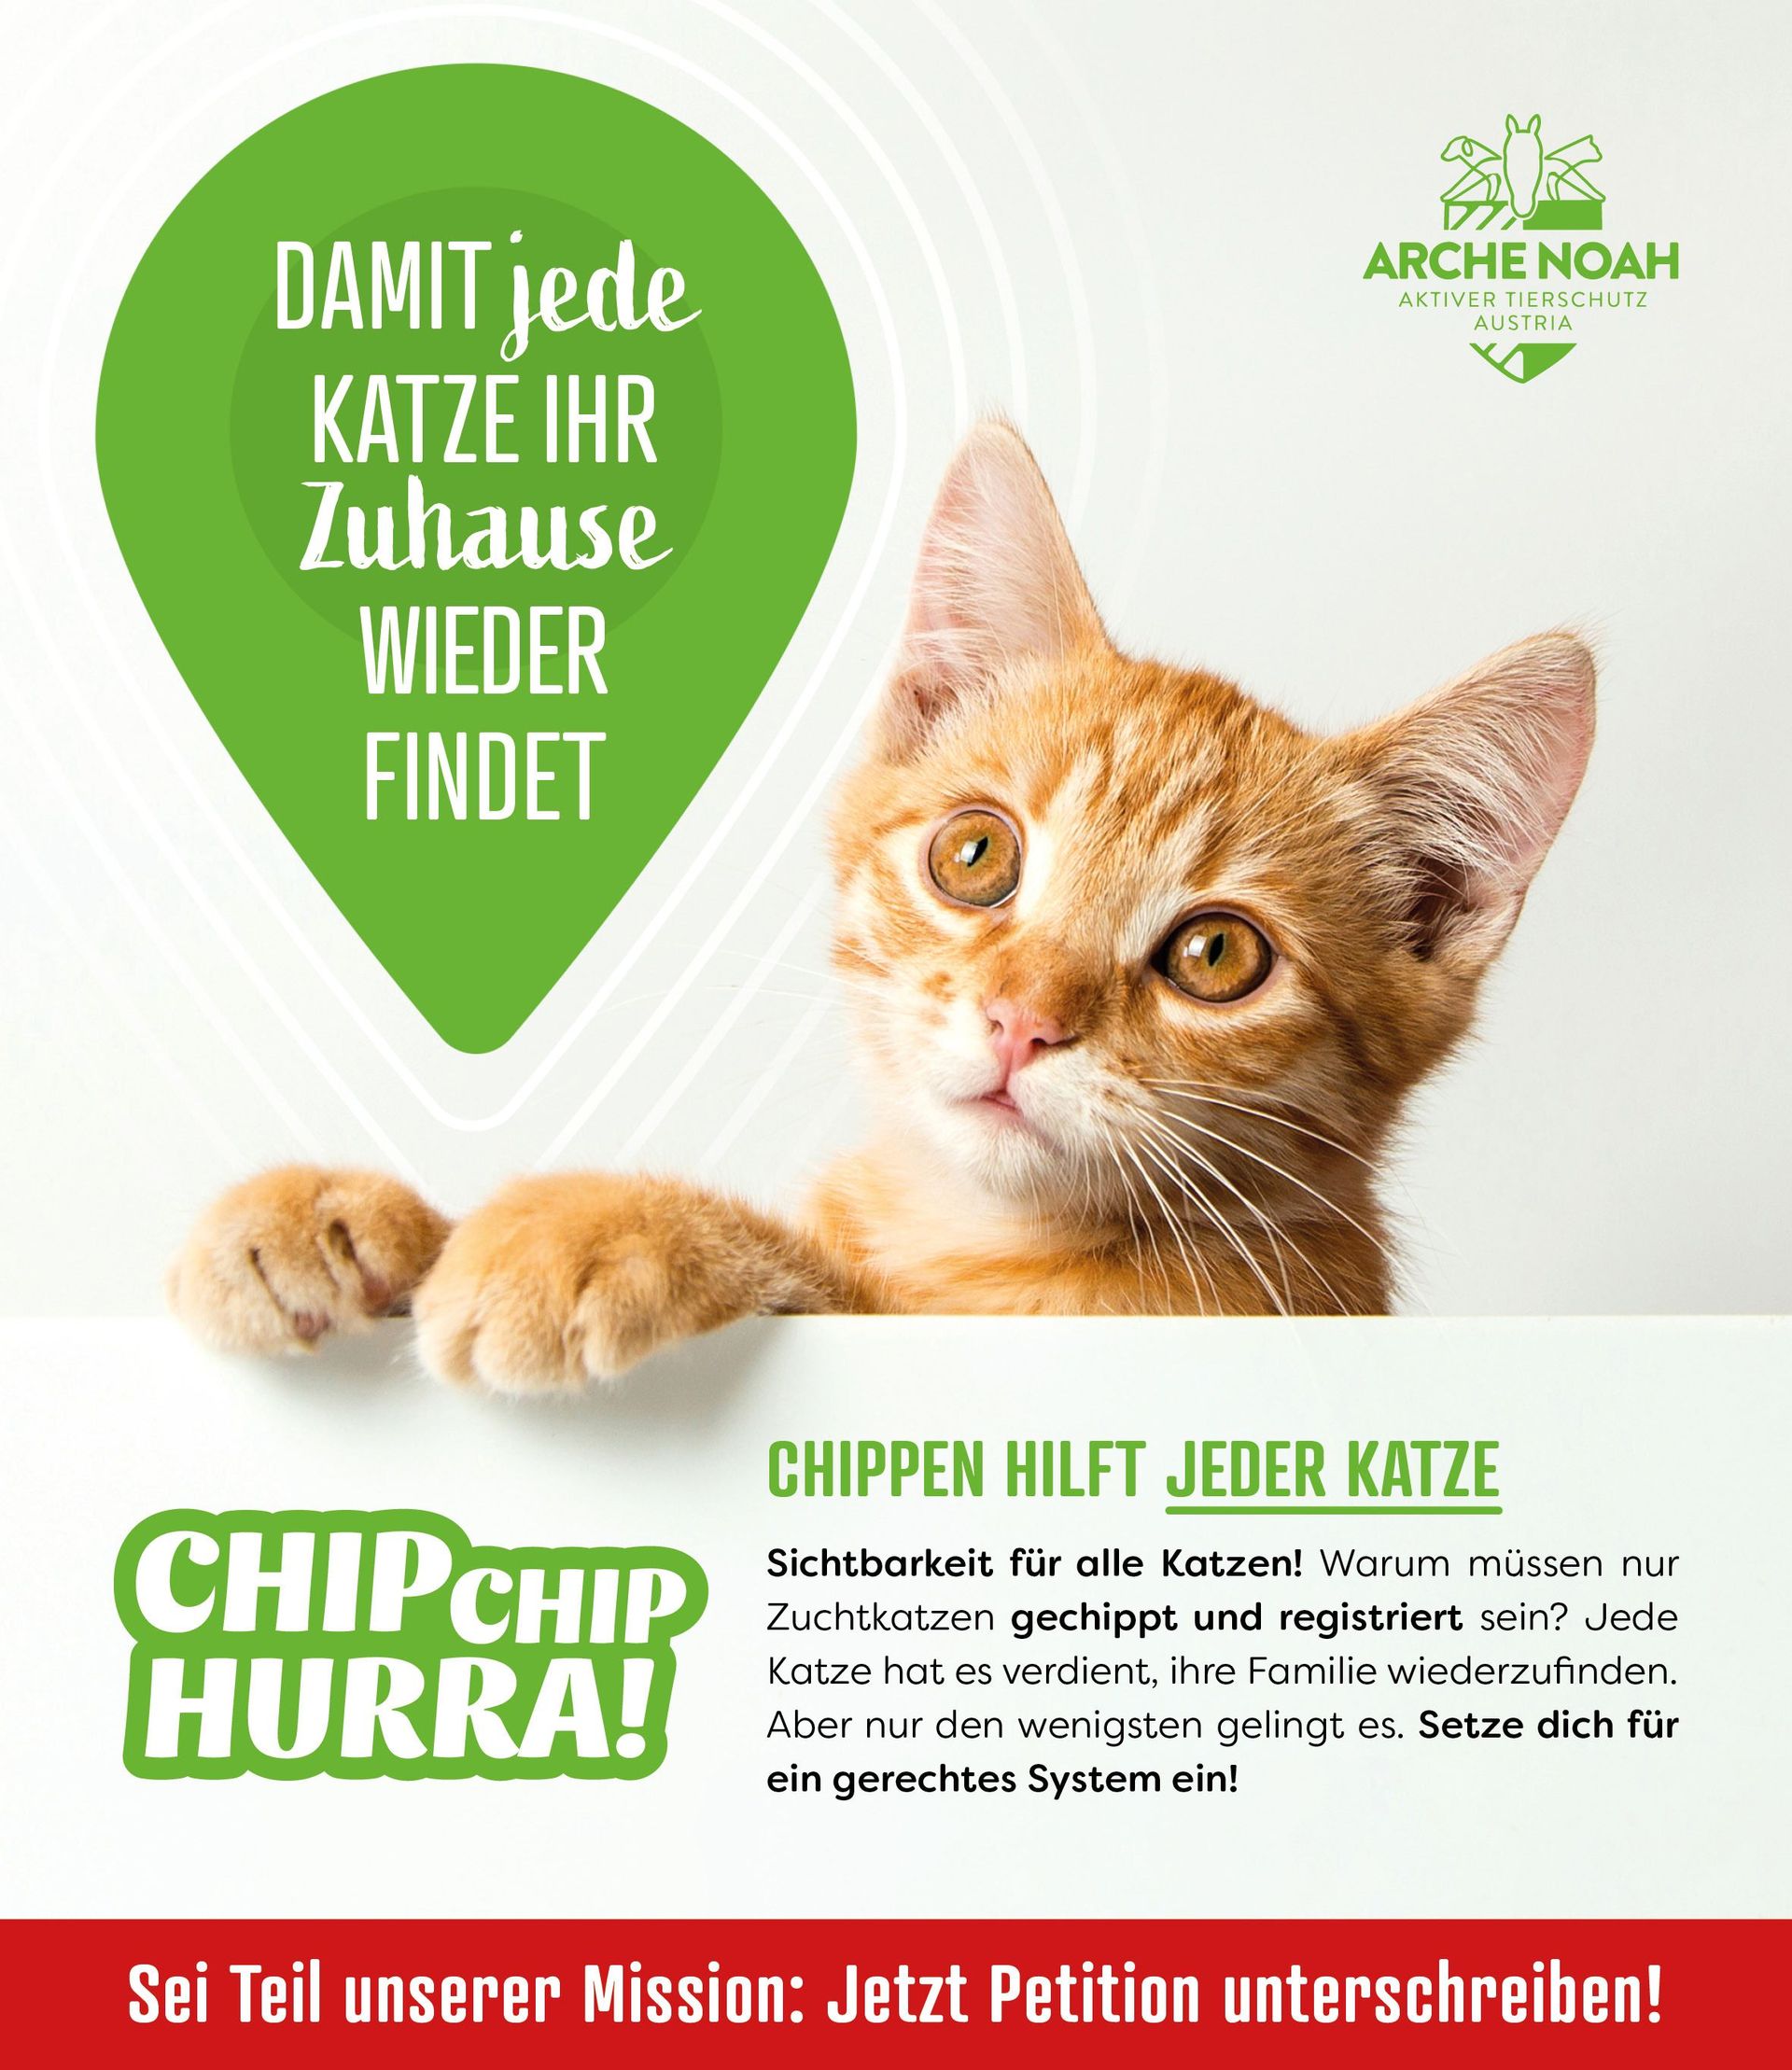 Chippen hilft jeder Katze, Chip Chip Hurra, Petition, Aktiver Tierschutz Austria, Arche Noah, Gefunden und doch verloren, Sichtbarkeit für alle Katzen, jede Katze hat es verdient, ihre Familie wiederzufinden, 